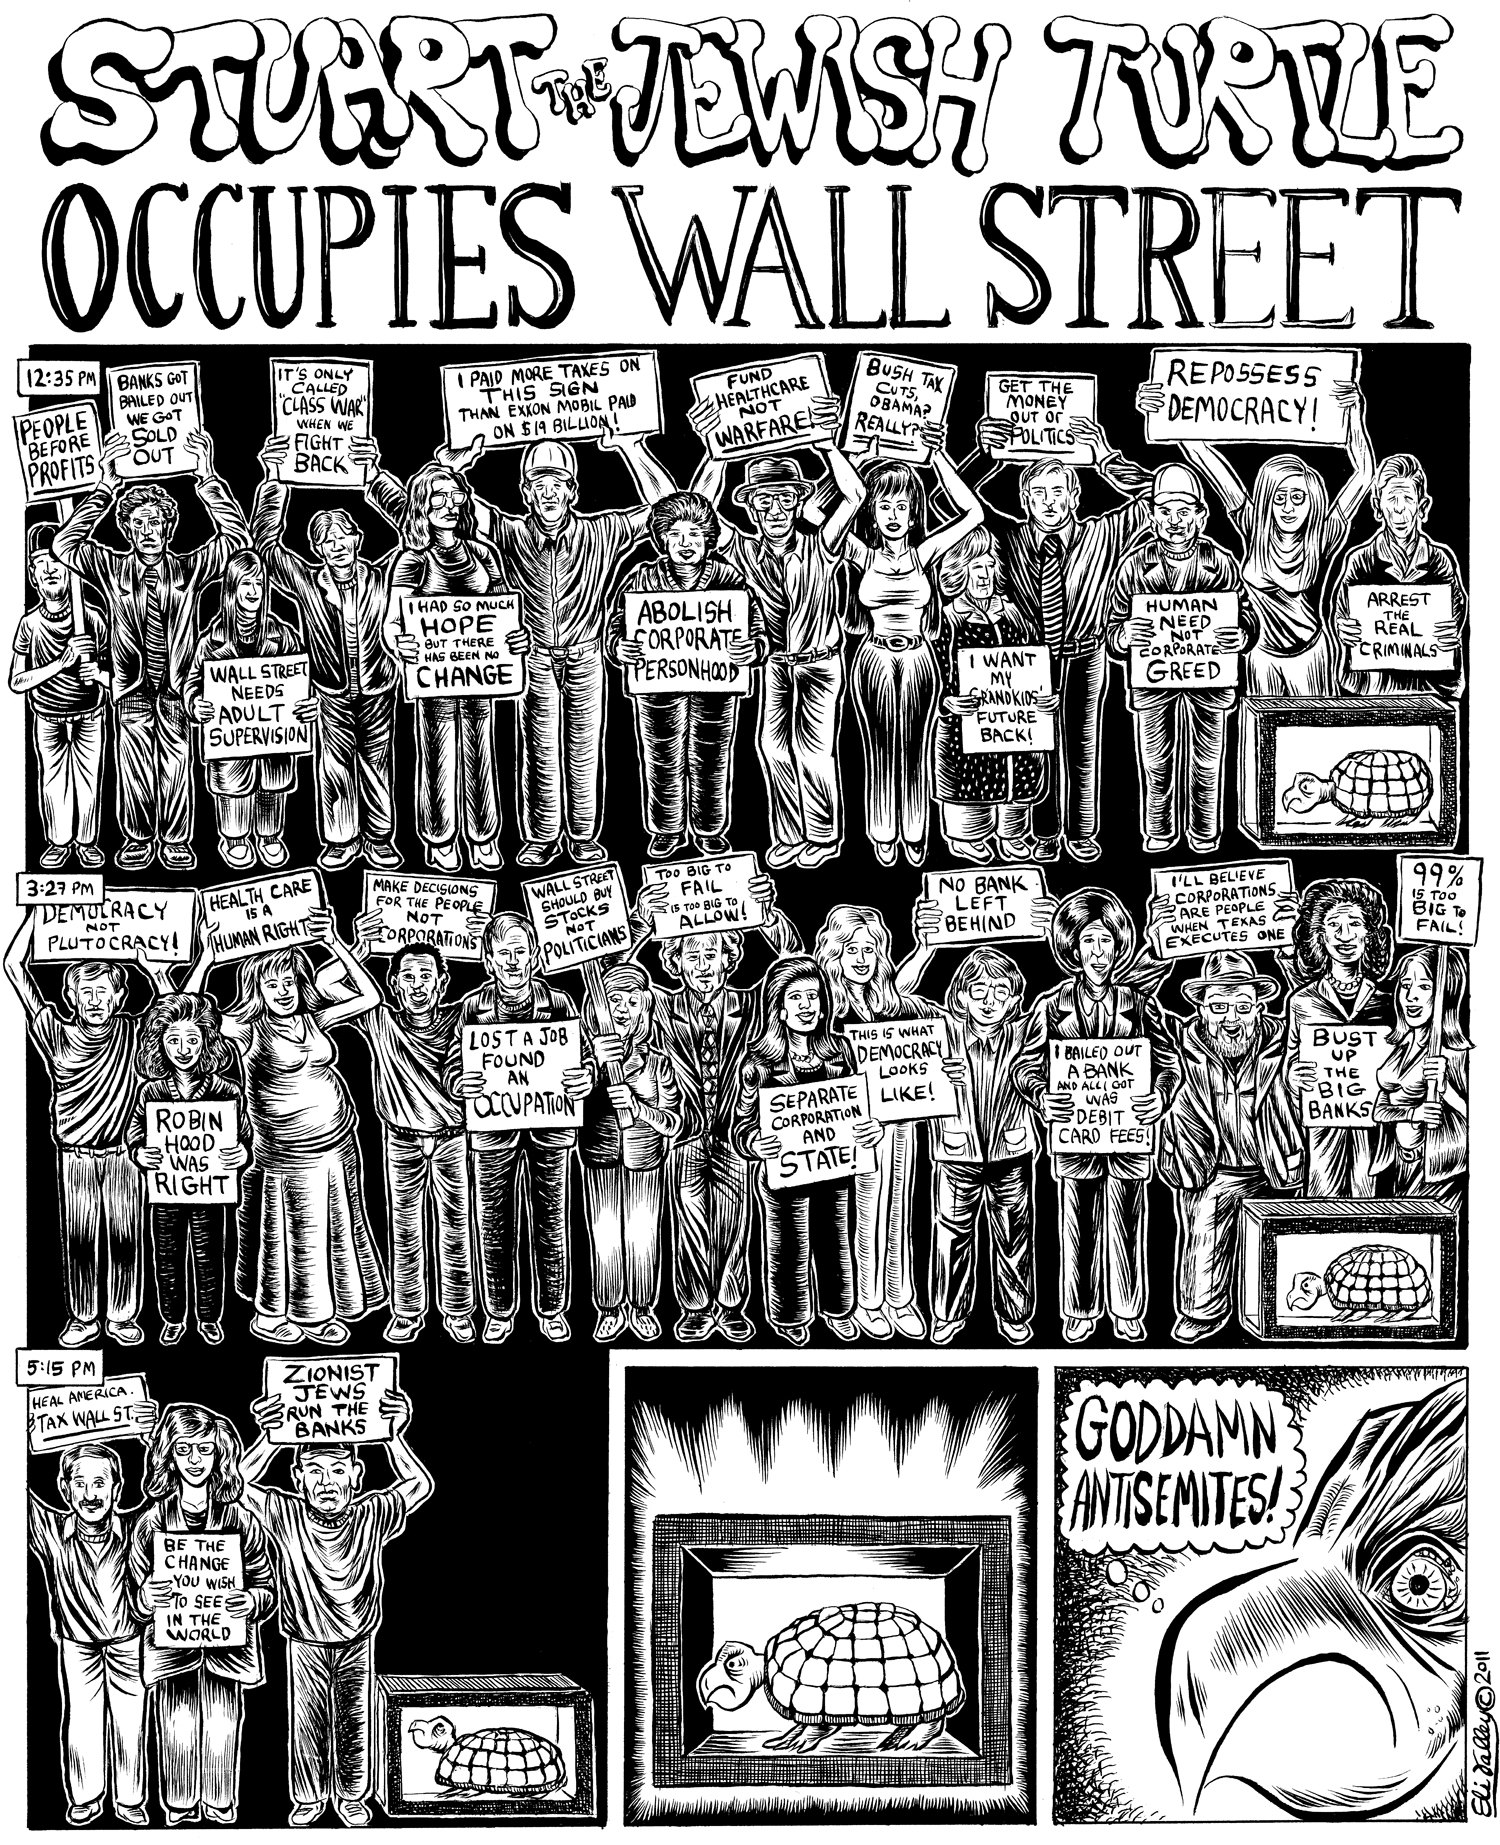 Stuart The Jewish Turtle Occupies Wall Street. Forward, 11/15/11